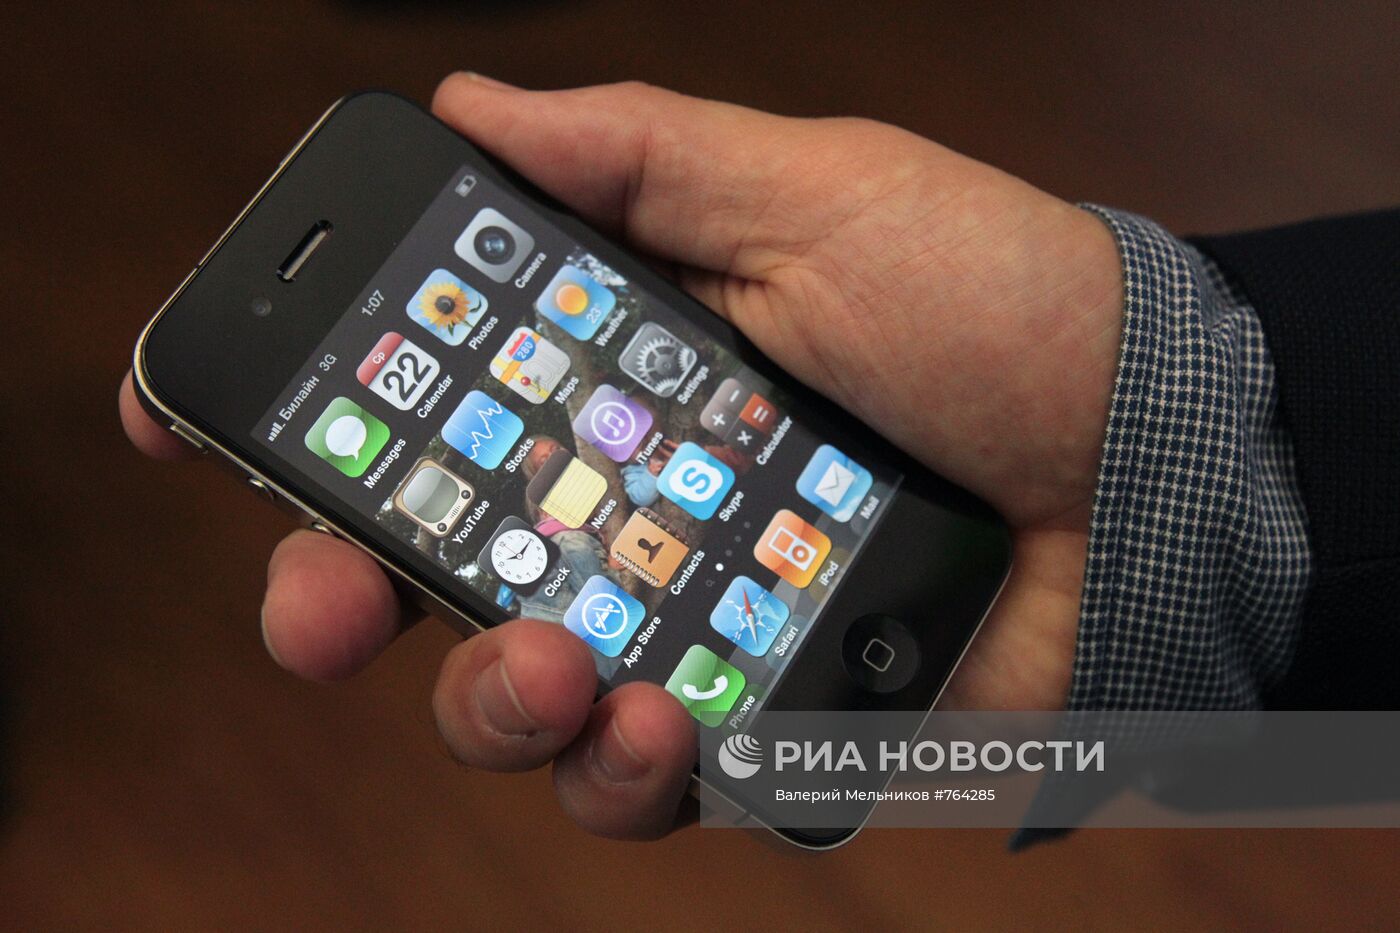 Новый инновационный мобильный телефон iPhone 4G